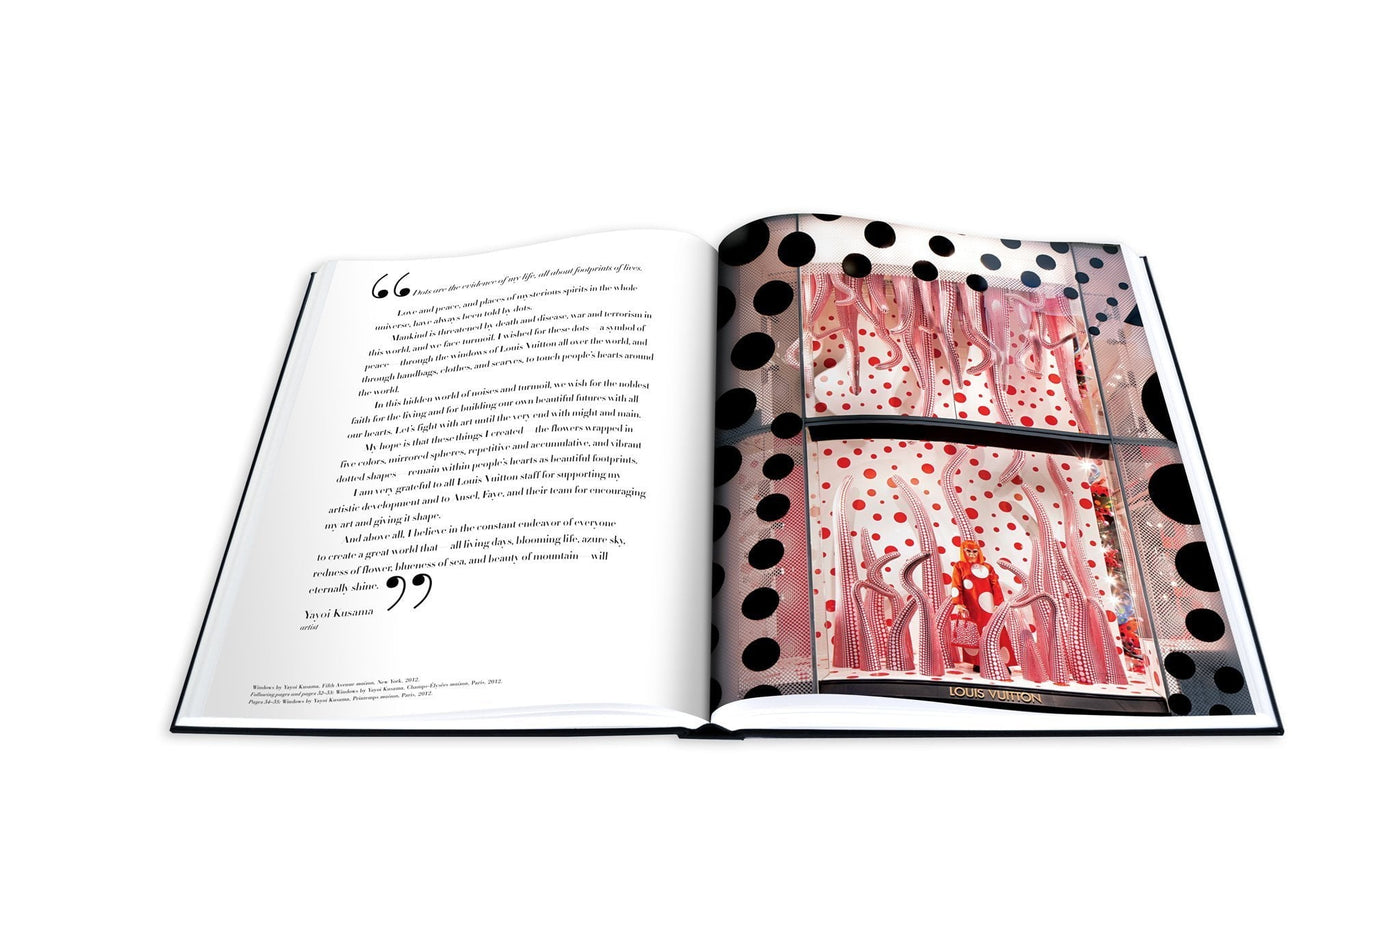 Louis Vuitton Windows [Book]